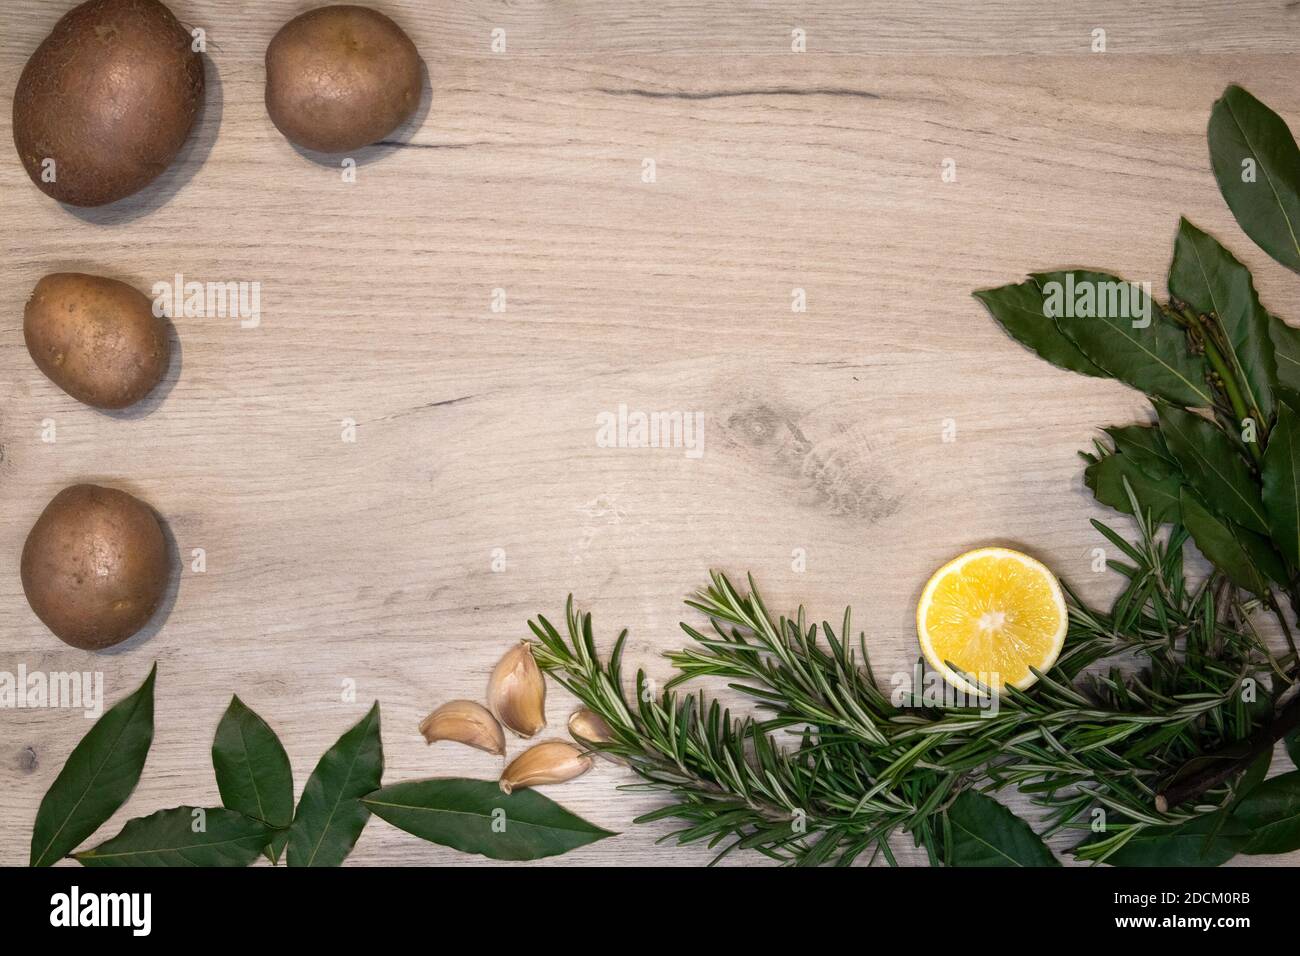 Bordo di legno chiaro incorniciato con sprigs di rosmarino fresco, foglie di alloro, metà di limone, spicchi d'aglio e poche patate crude, modello di disegno Foto Stock